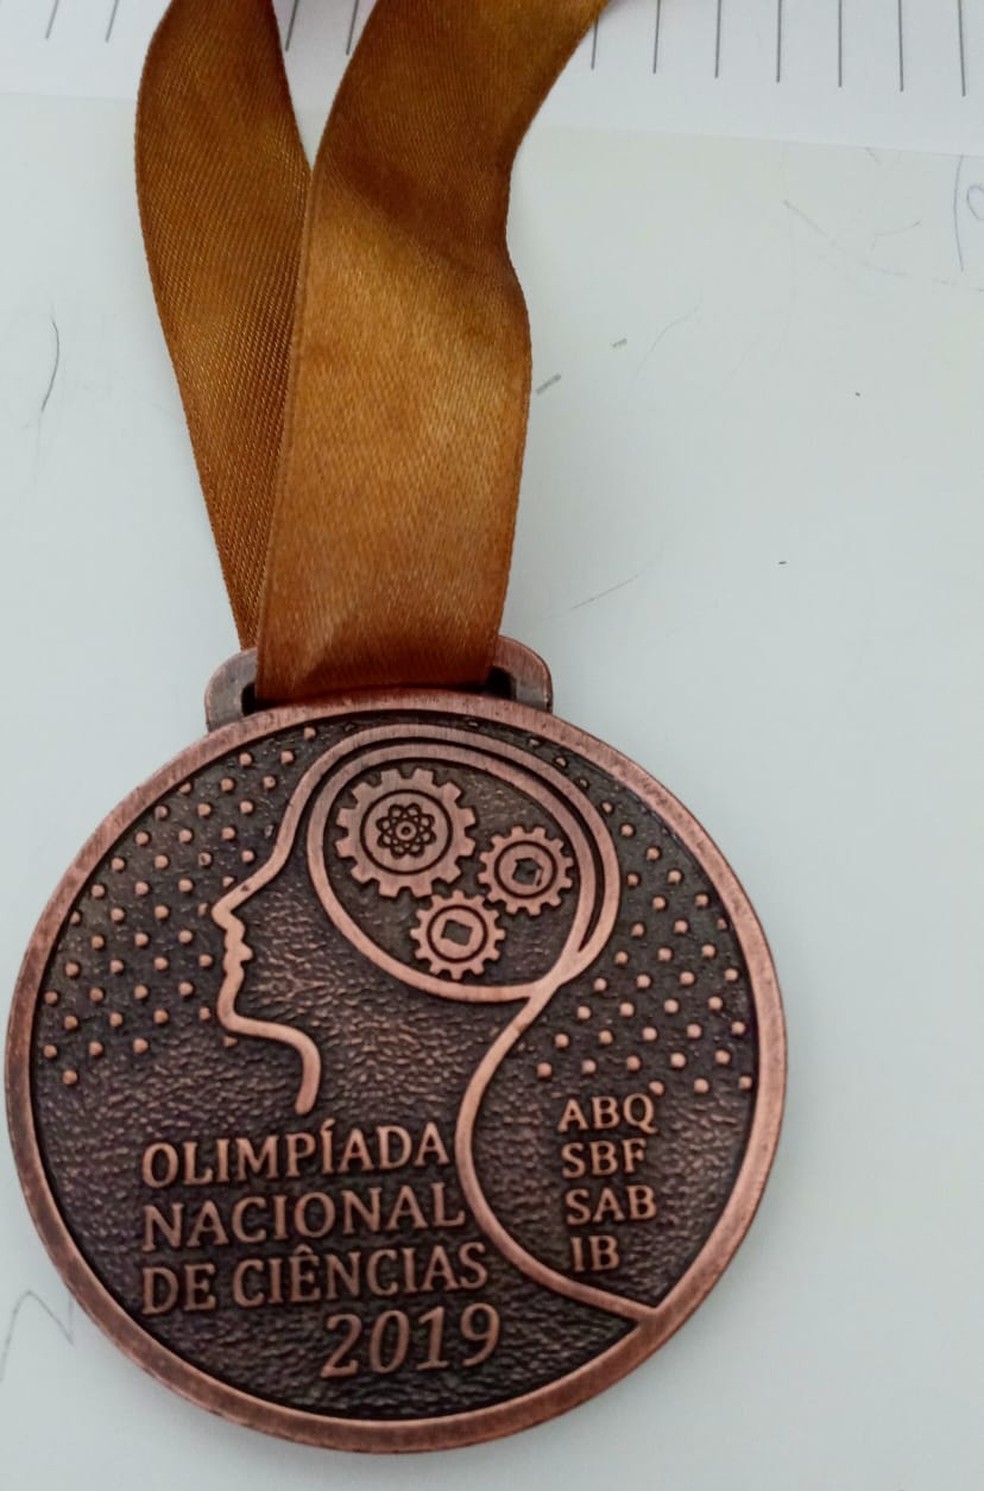 Medalha de bronze que paraibano ganhou na Olimpíada Nacional de Ciências em 2019 — Foto: Renan Balbino/Arquivo pessoal